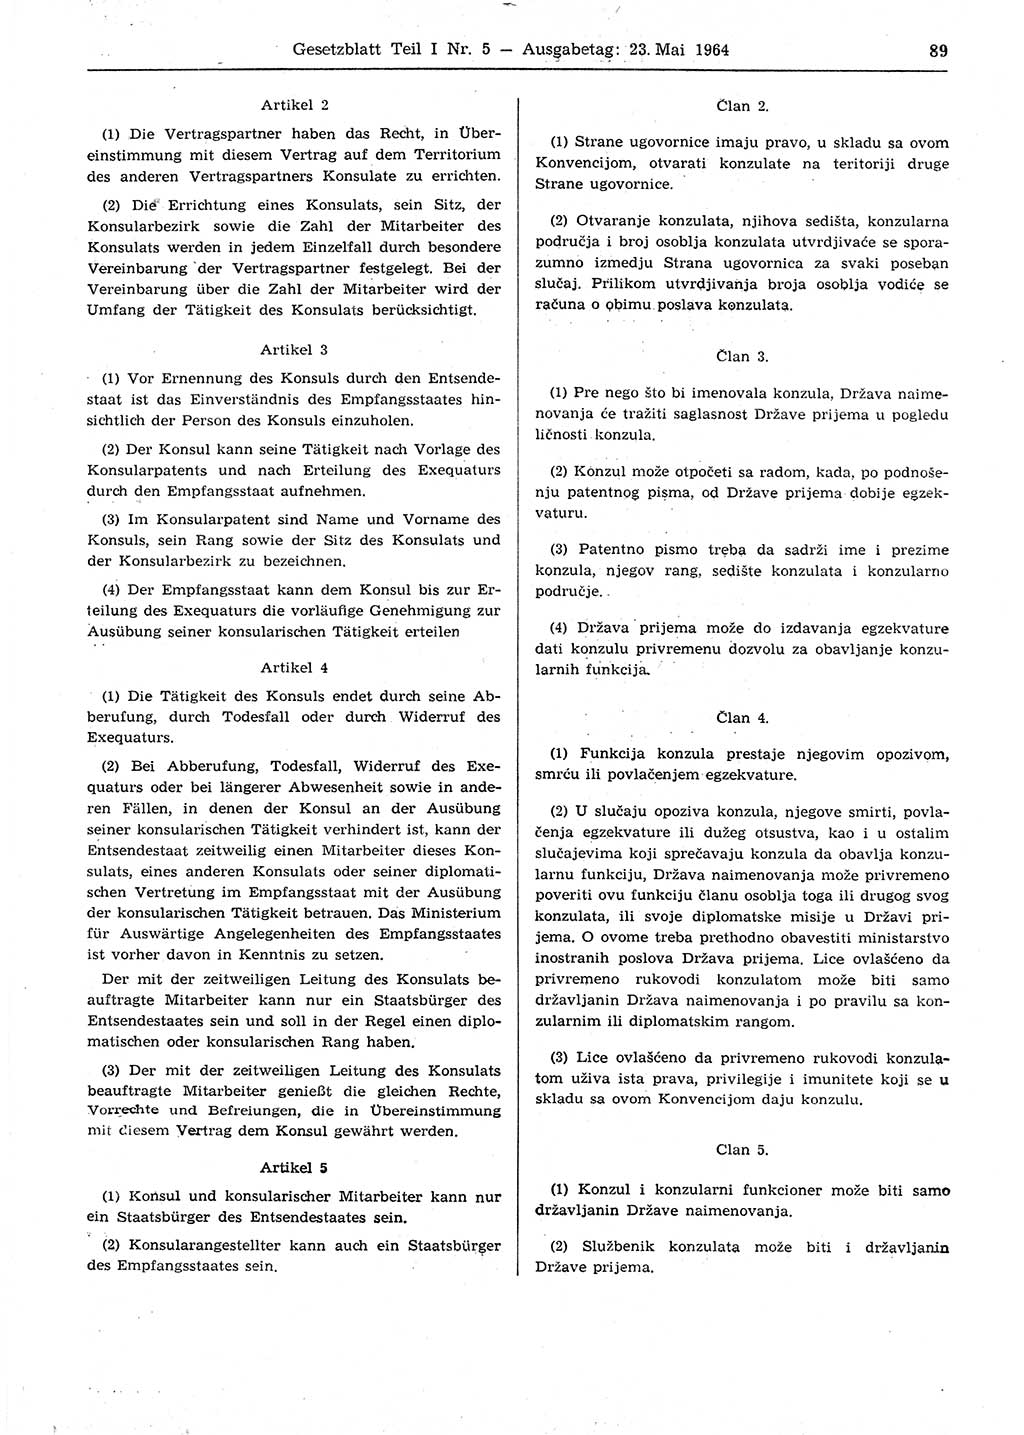 Gesetzblatt (GBl.) der Deutschen Demokratischen Republik (DDR) Teil Ⅰ 1964, Seite 89 (GBl. DDR Ⅰ 1964, S. 89)